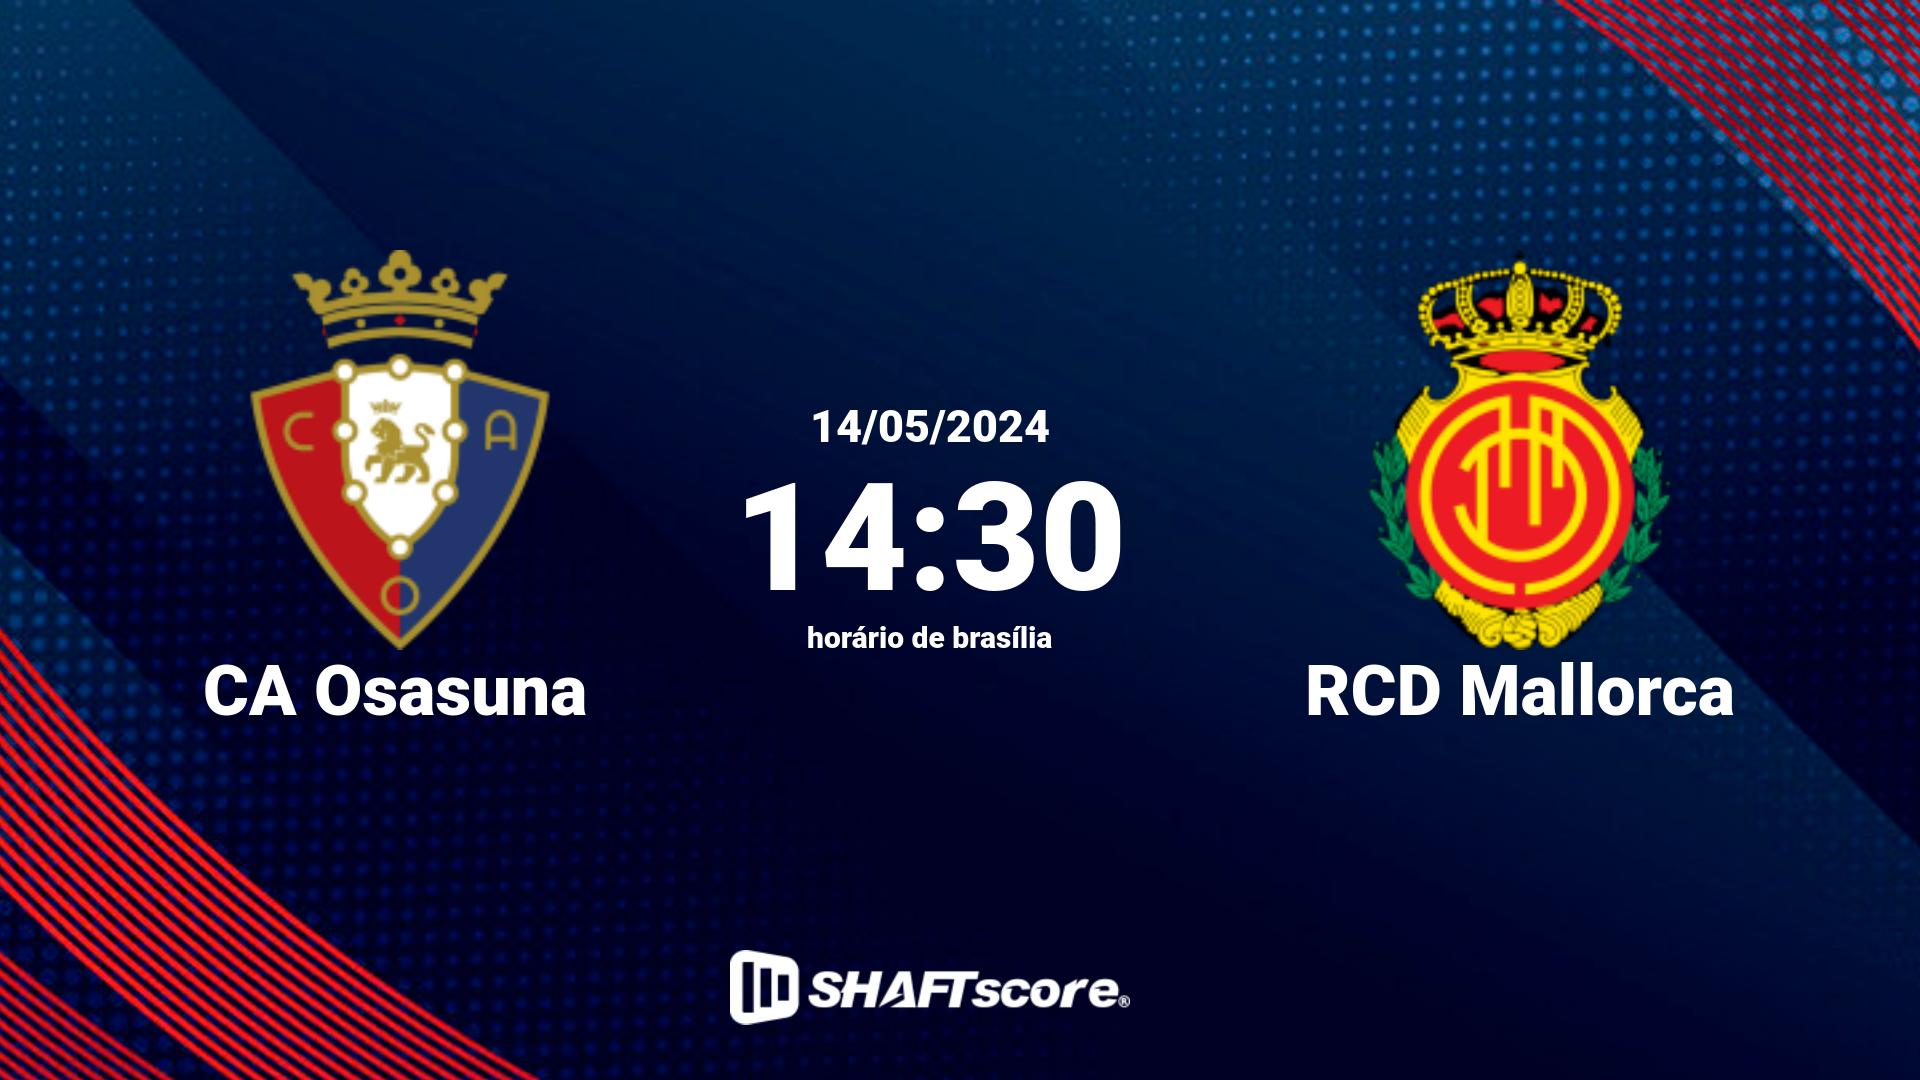 Estatísticas do jogo CA Osasuna vs RCD Mallorca 14.05 14:30